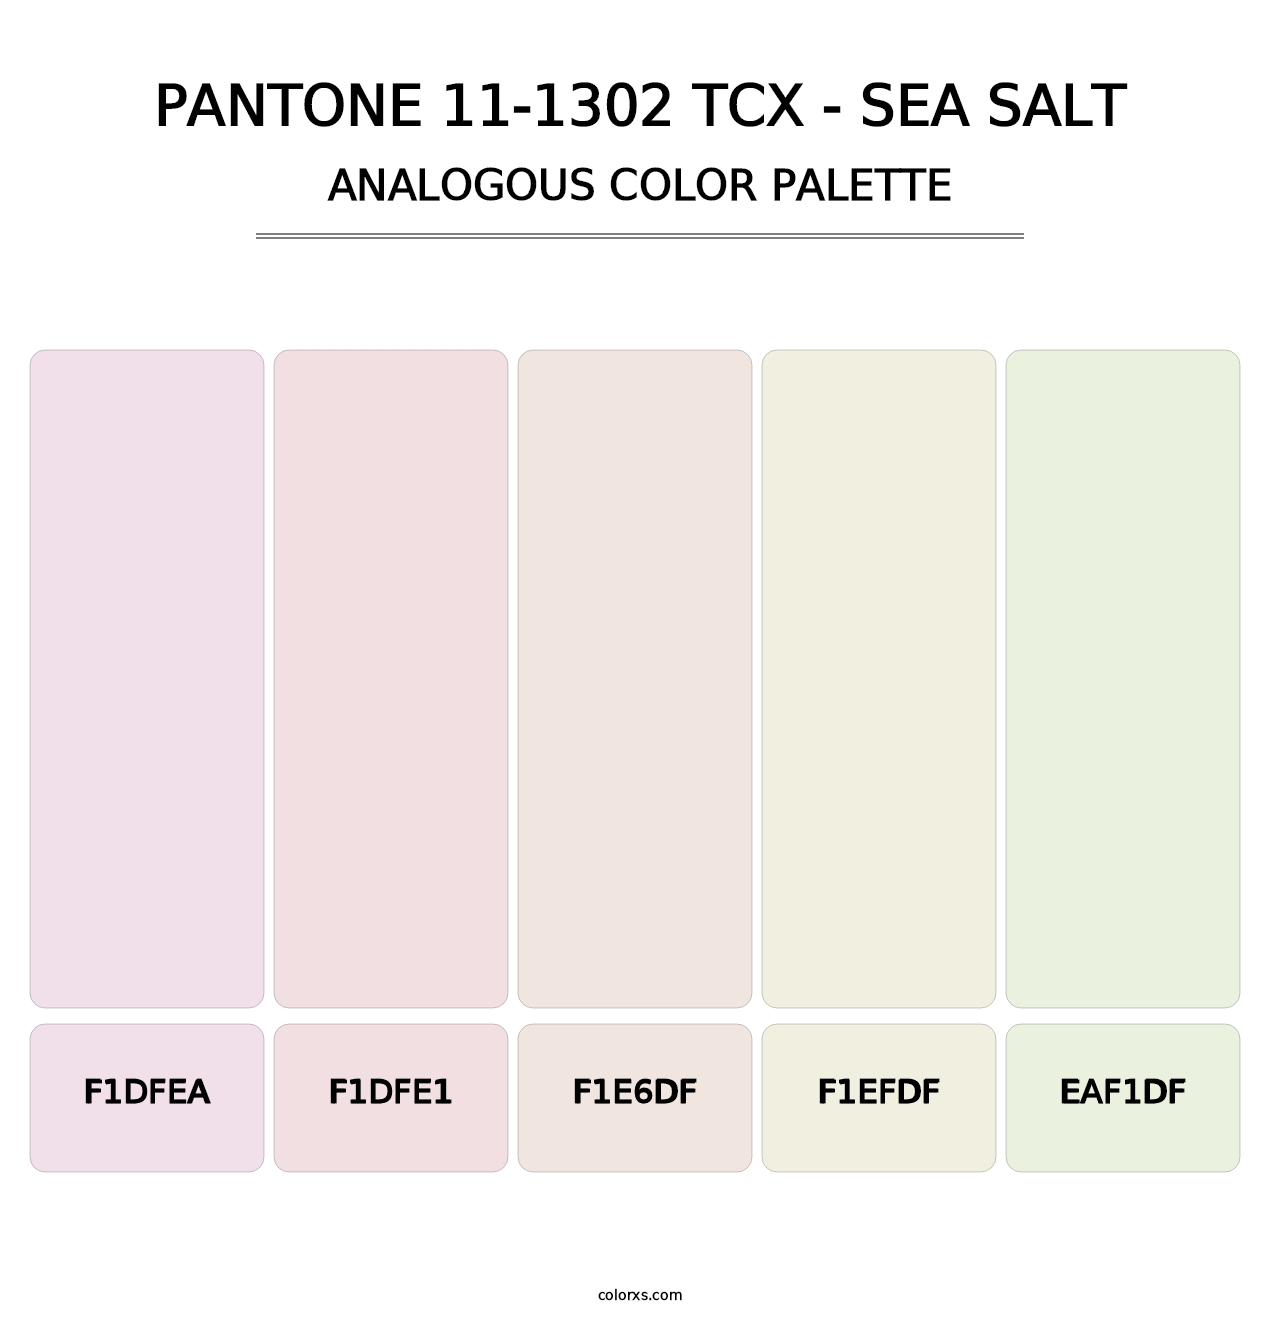 PANTONE 11-1302 TCX - Sea Salt - Analogous Color Palette